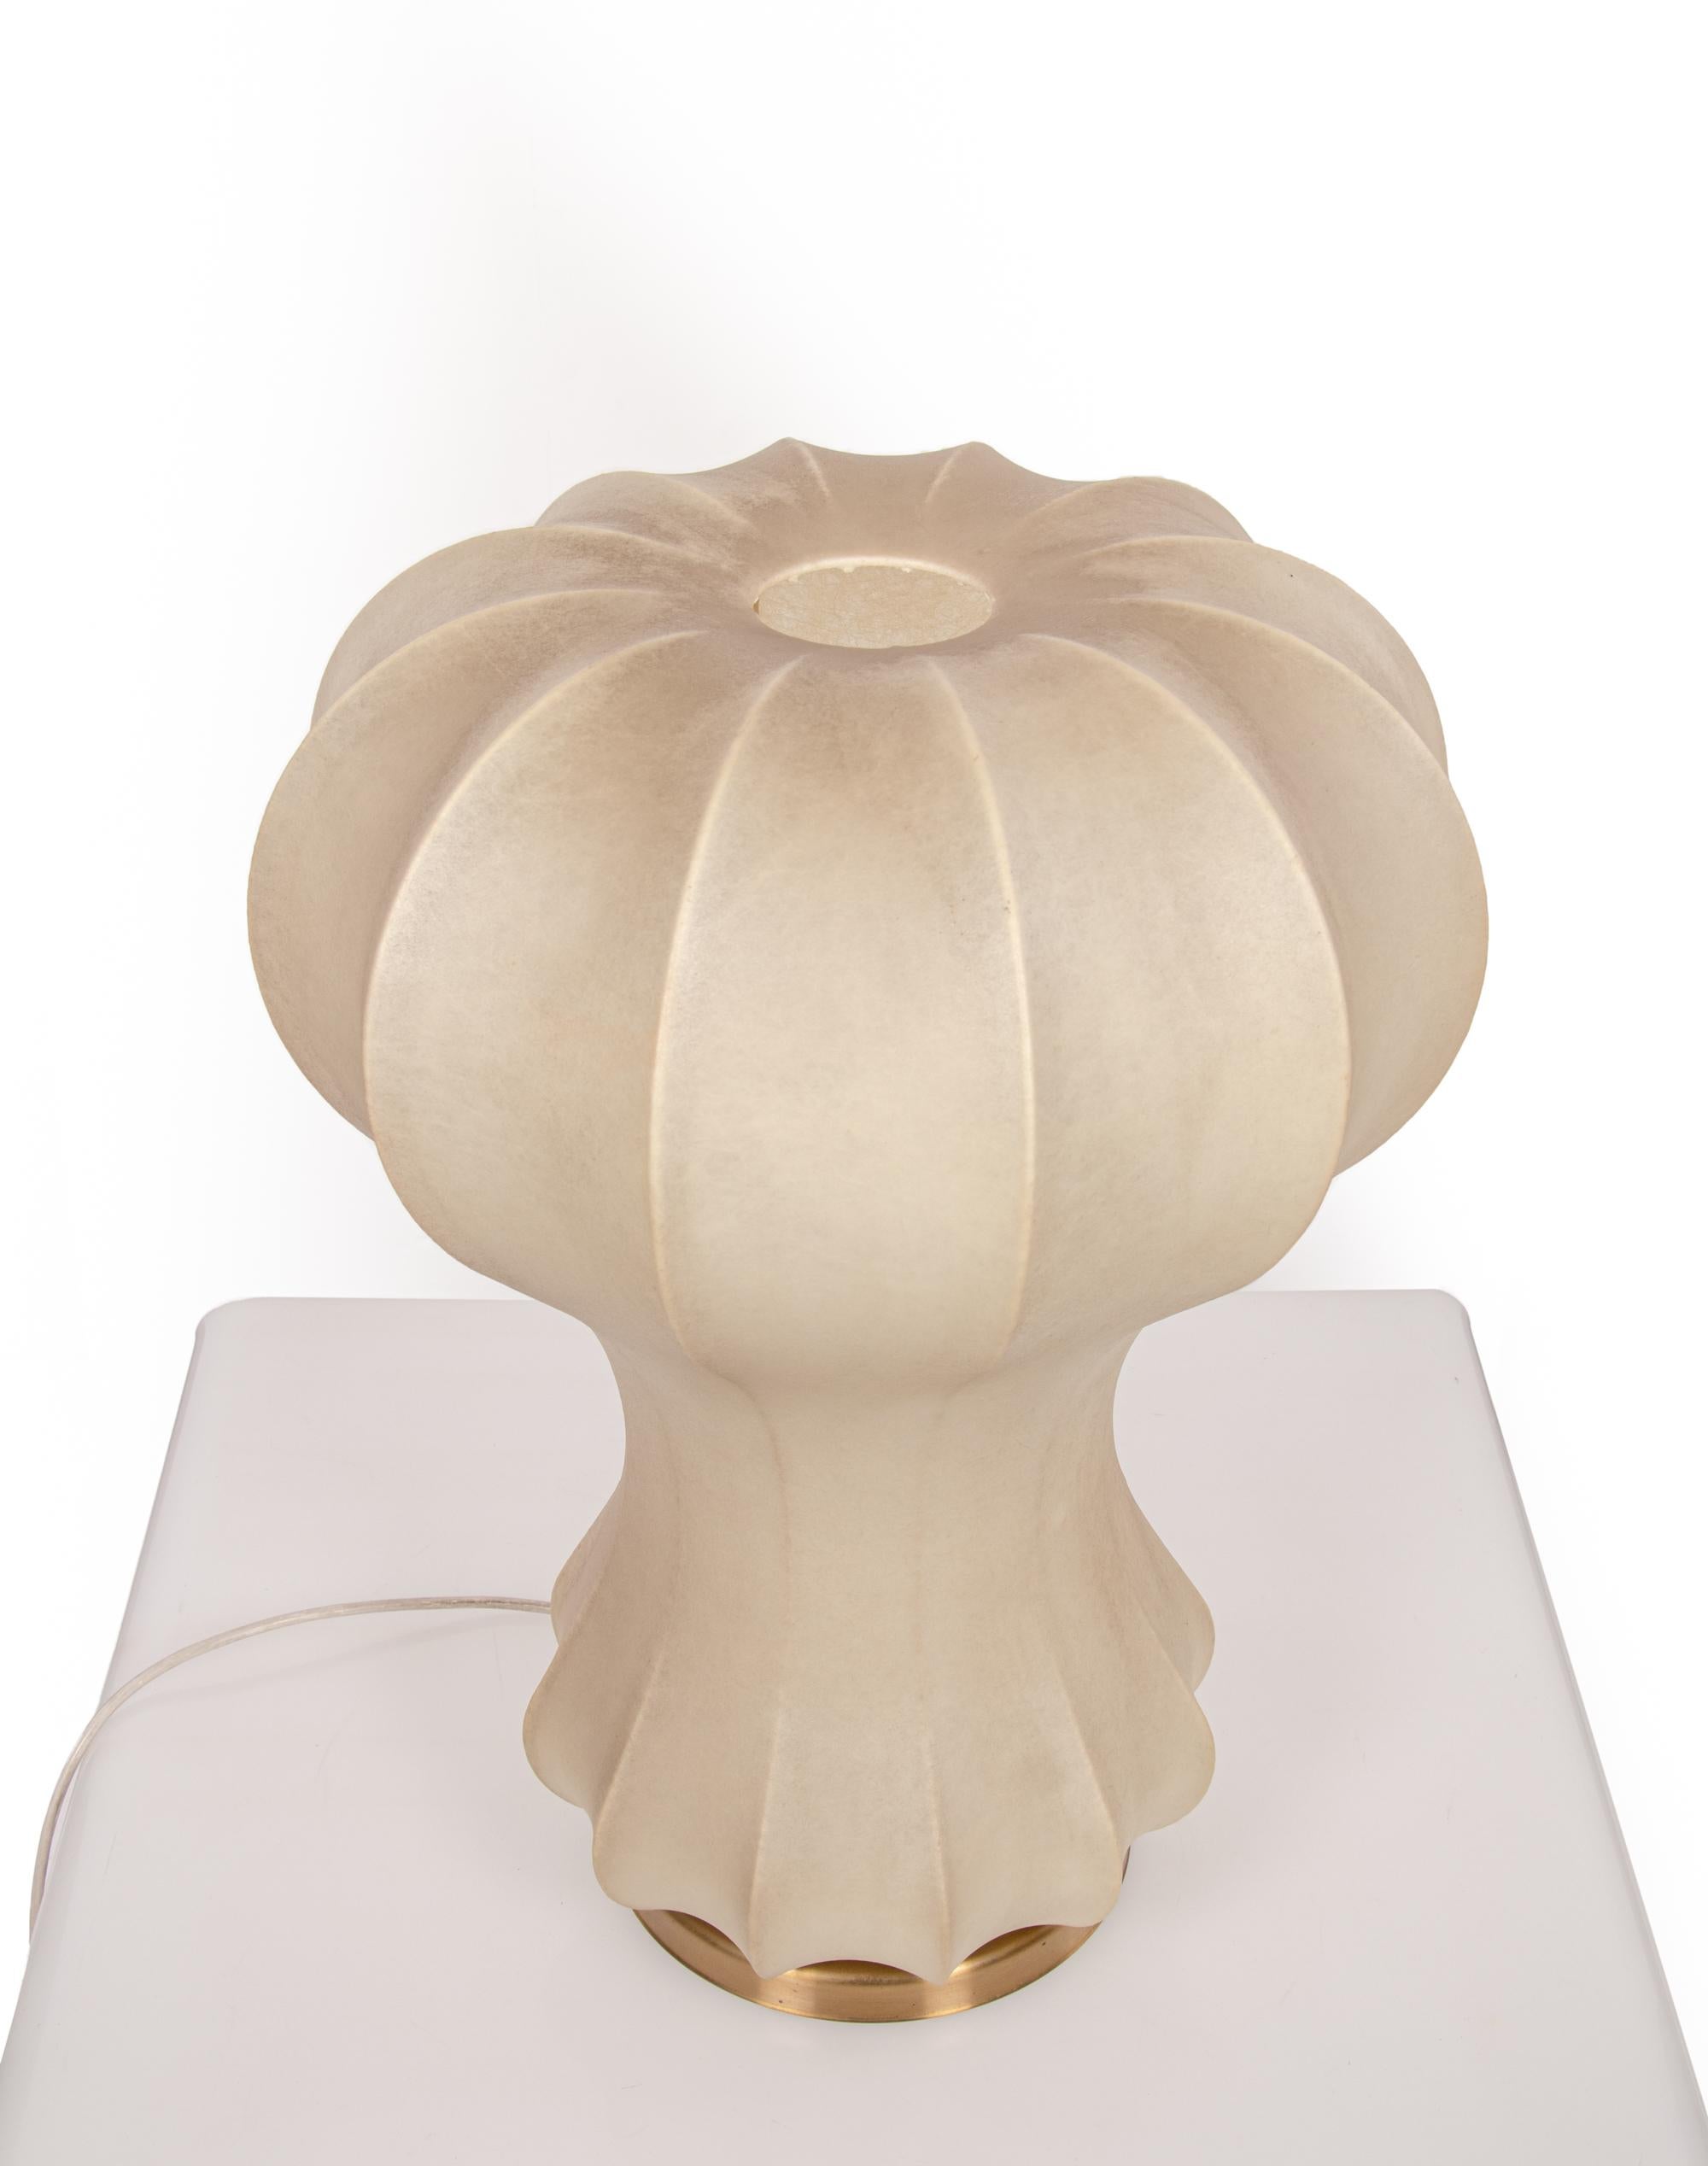 Lampe de table cocon 'Gatto' conçue par Achille et Pier Giacomo Castiglioni. La lampe est fabriquée à partir d'un polymère unique pulvérisé sur un cadre métallique, pour donner un effet de cocon. 

Dimensions : hauteur 22.8